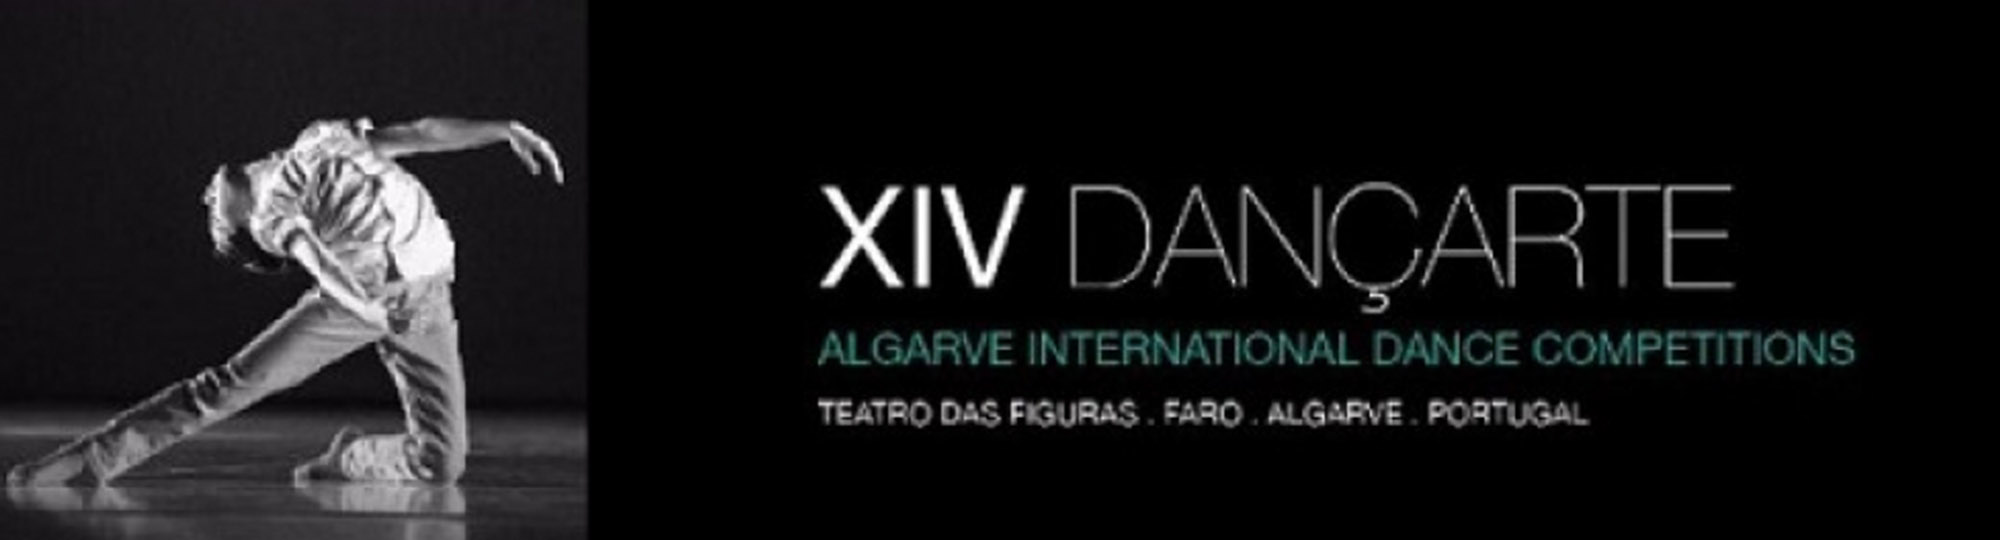 Rosário destaca-se no 14.º Dançarte - Algarve Internacional Dance Competitions